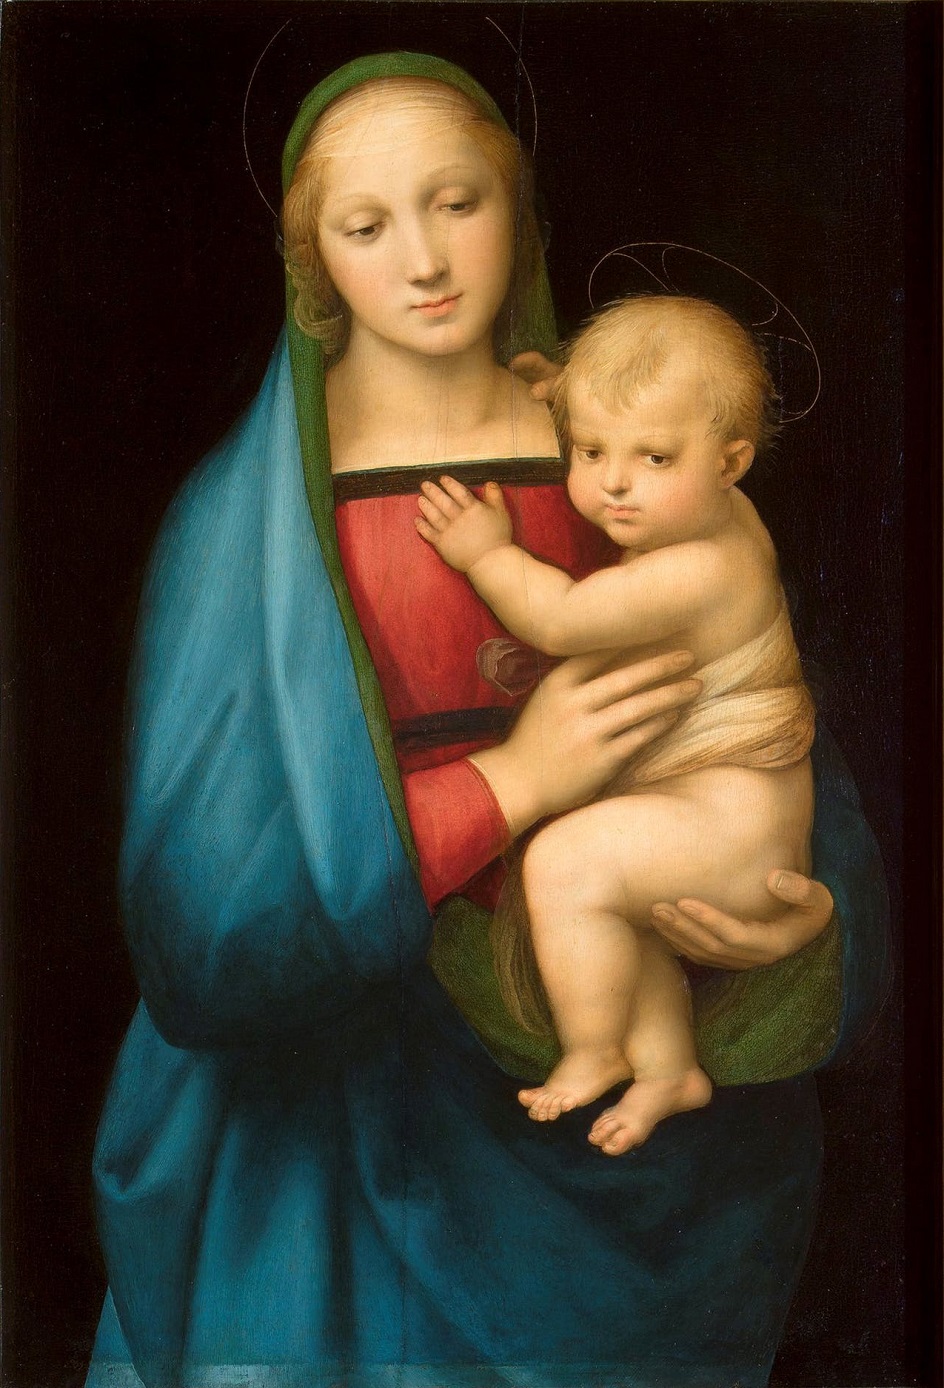 Рафаэль Санти. Картина «Мадонна Грандука», 1504